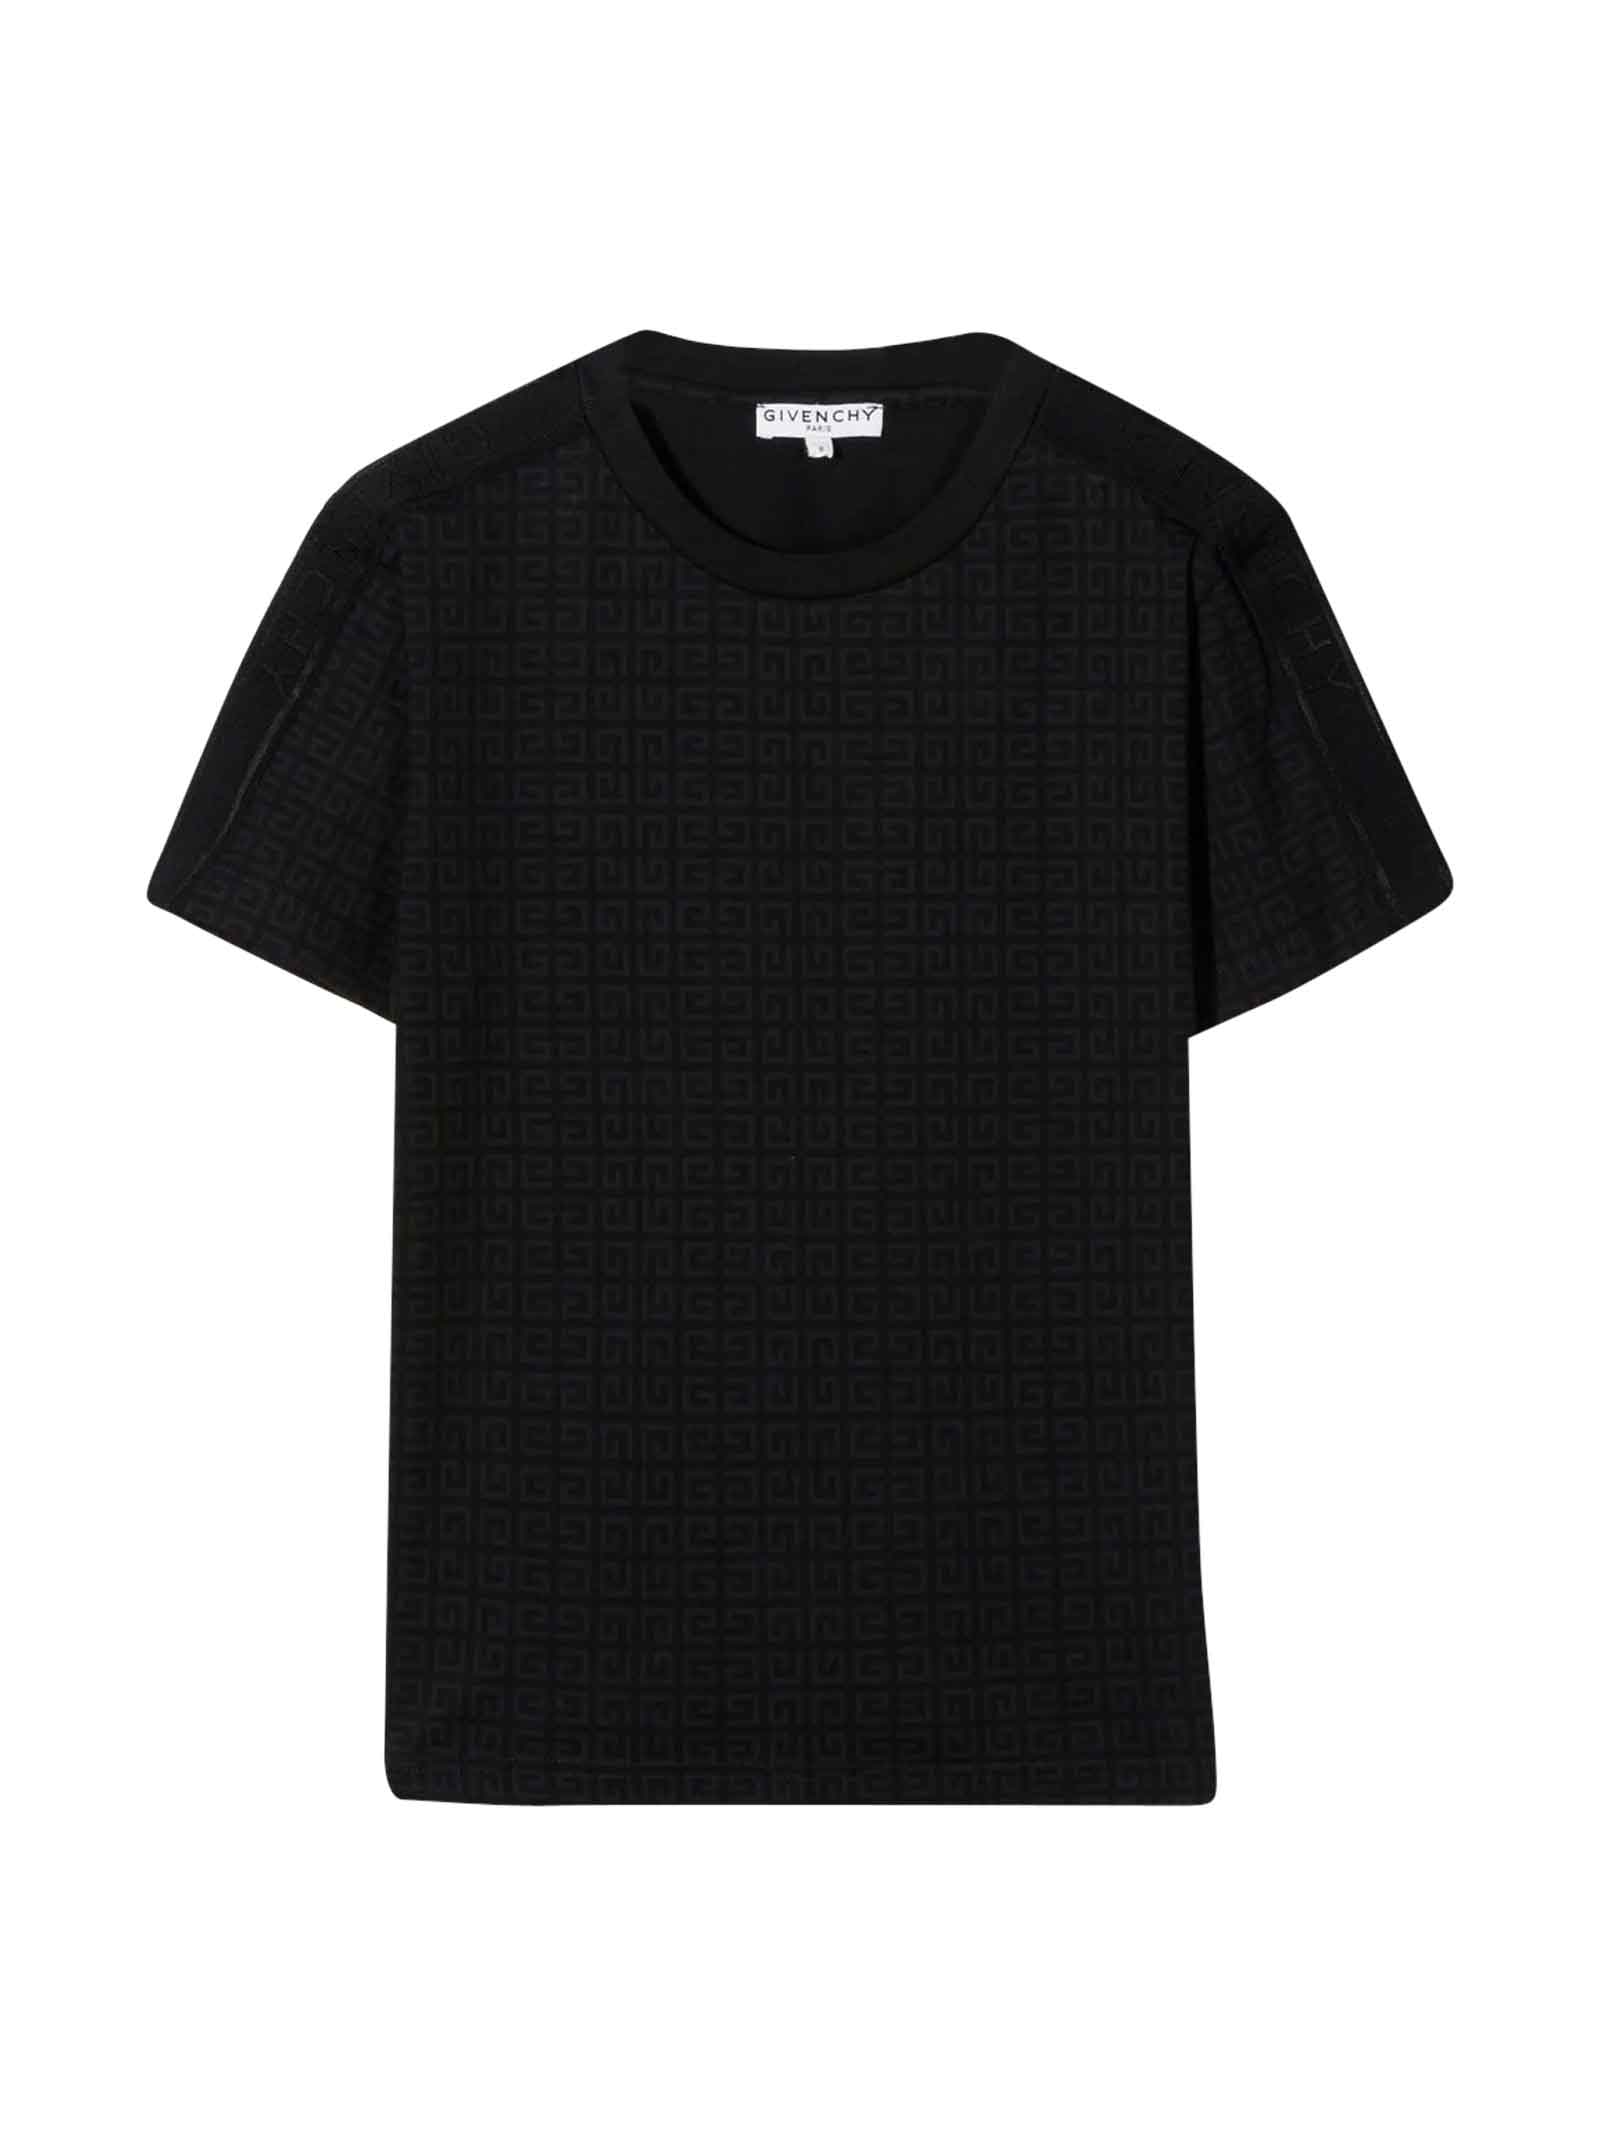 Givenchy Black Unisex T-shirt